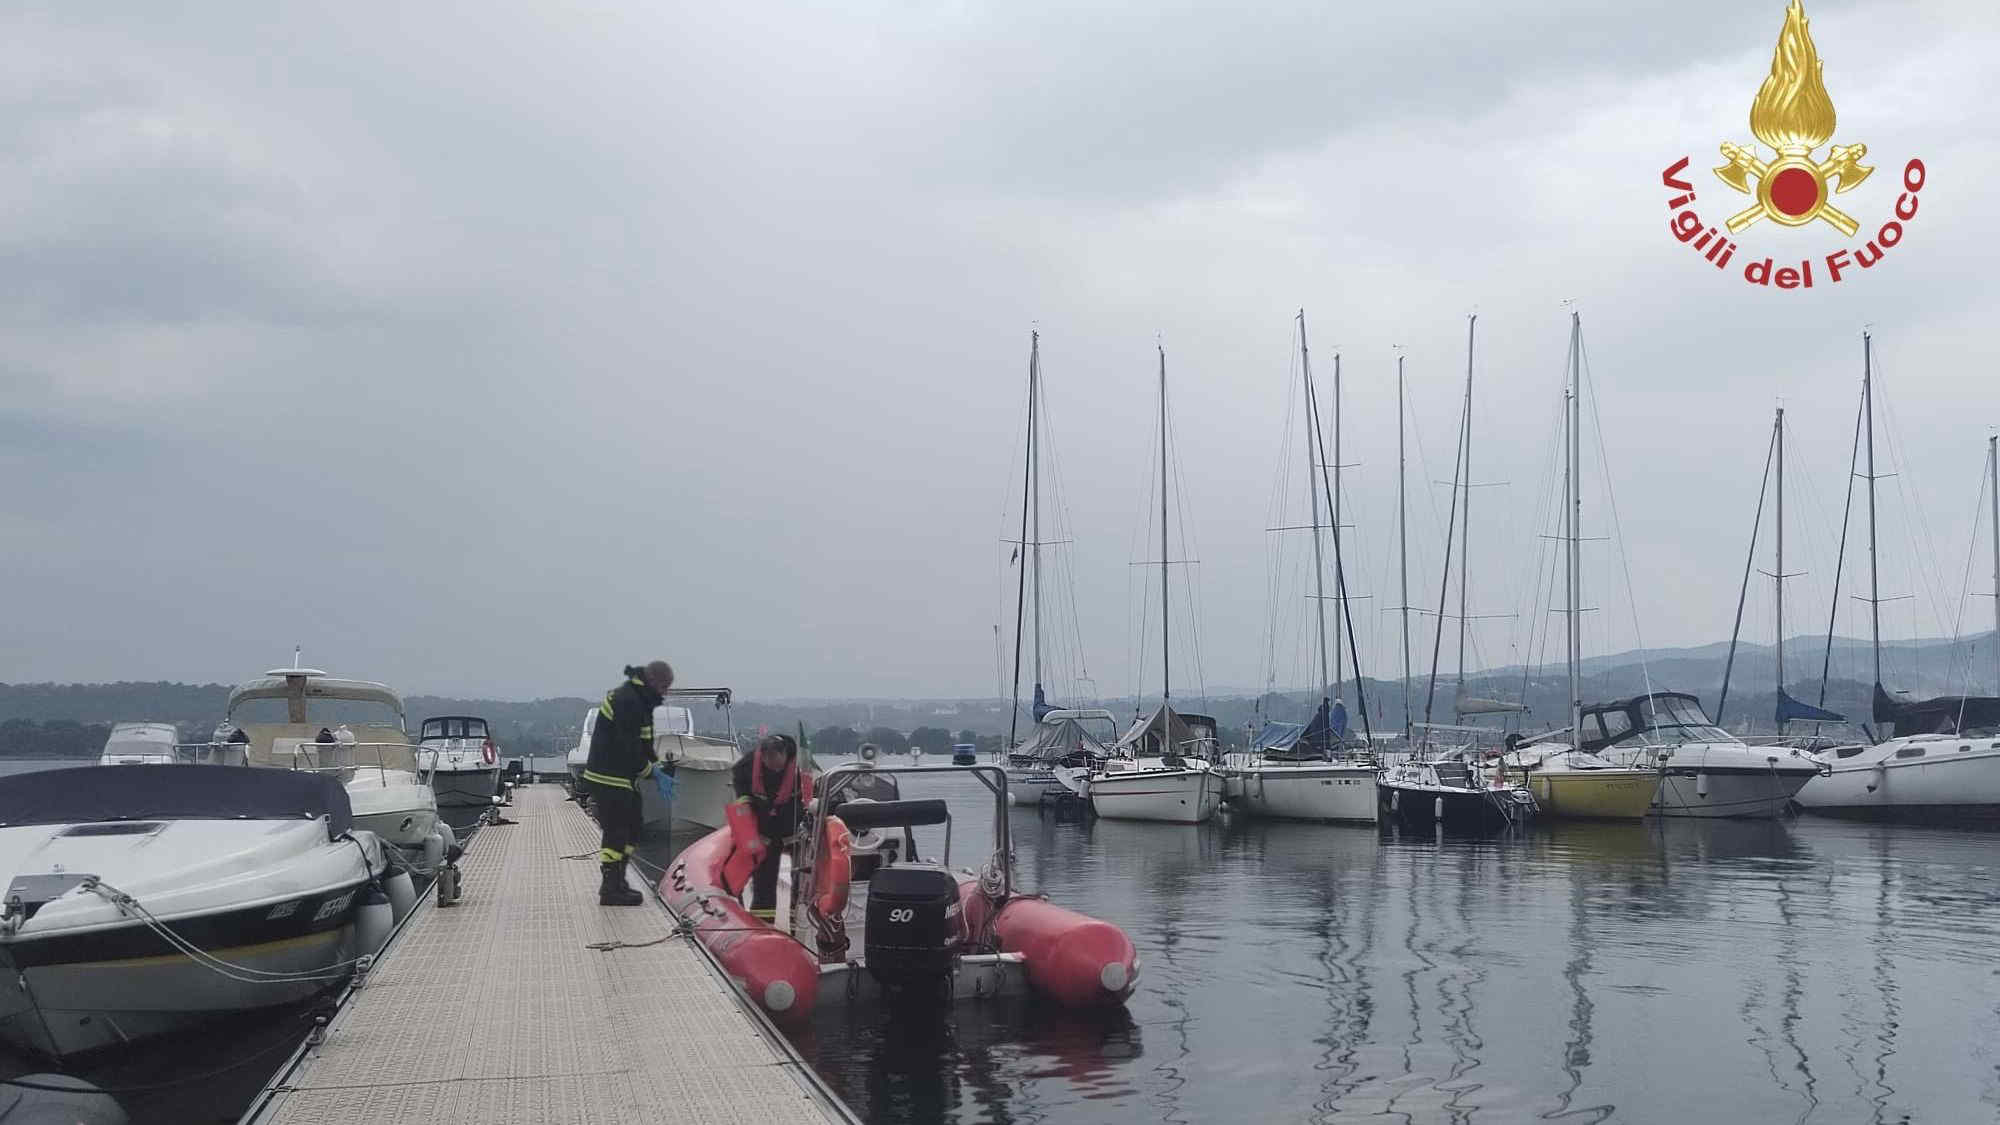 Maltempo, barca si ribalta sul Lago Maggiore: 4 vittime - Le immagini